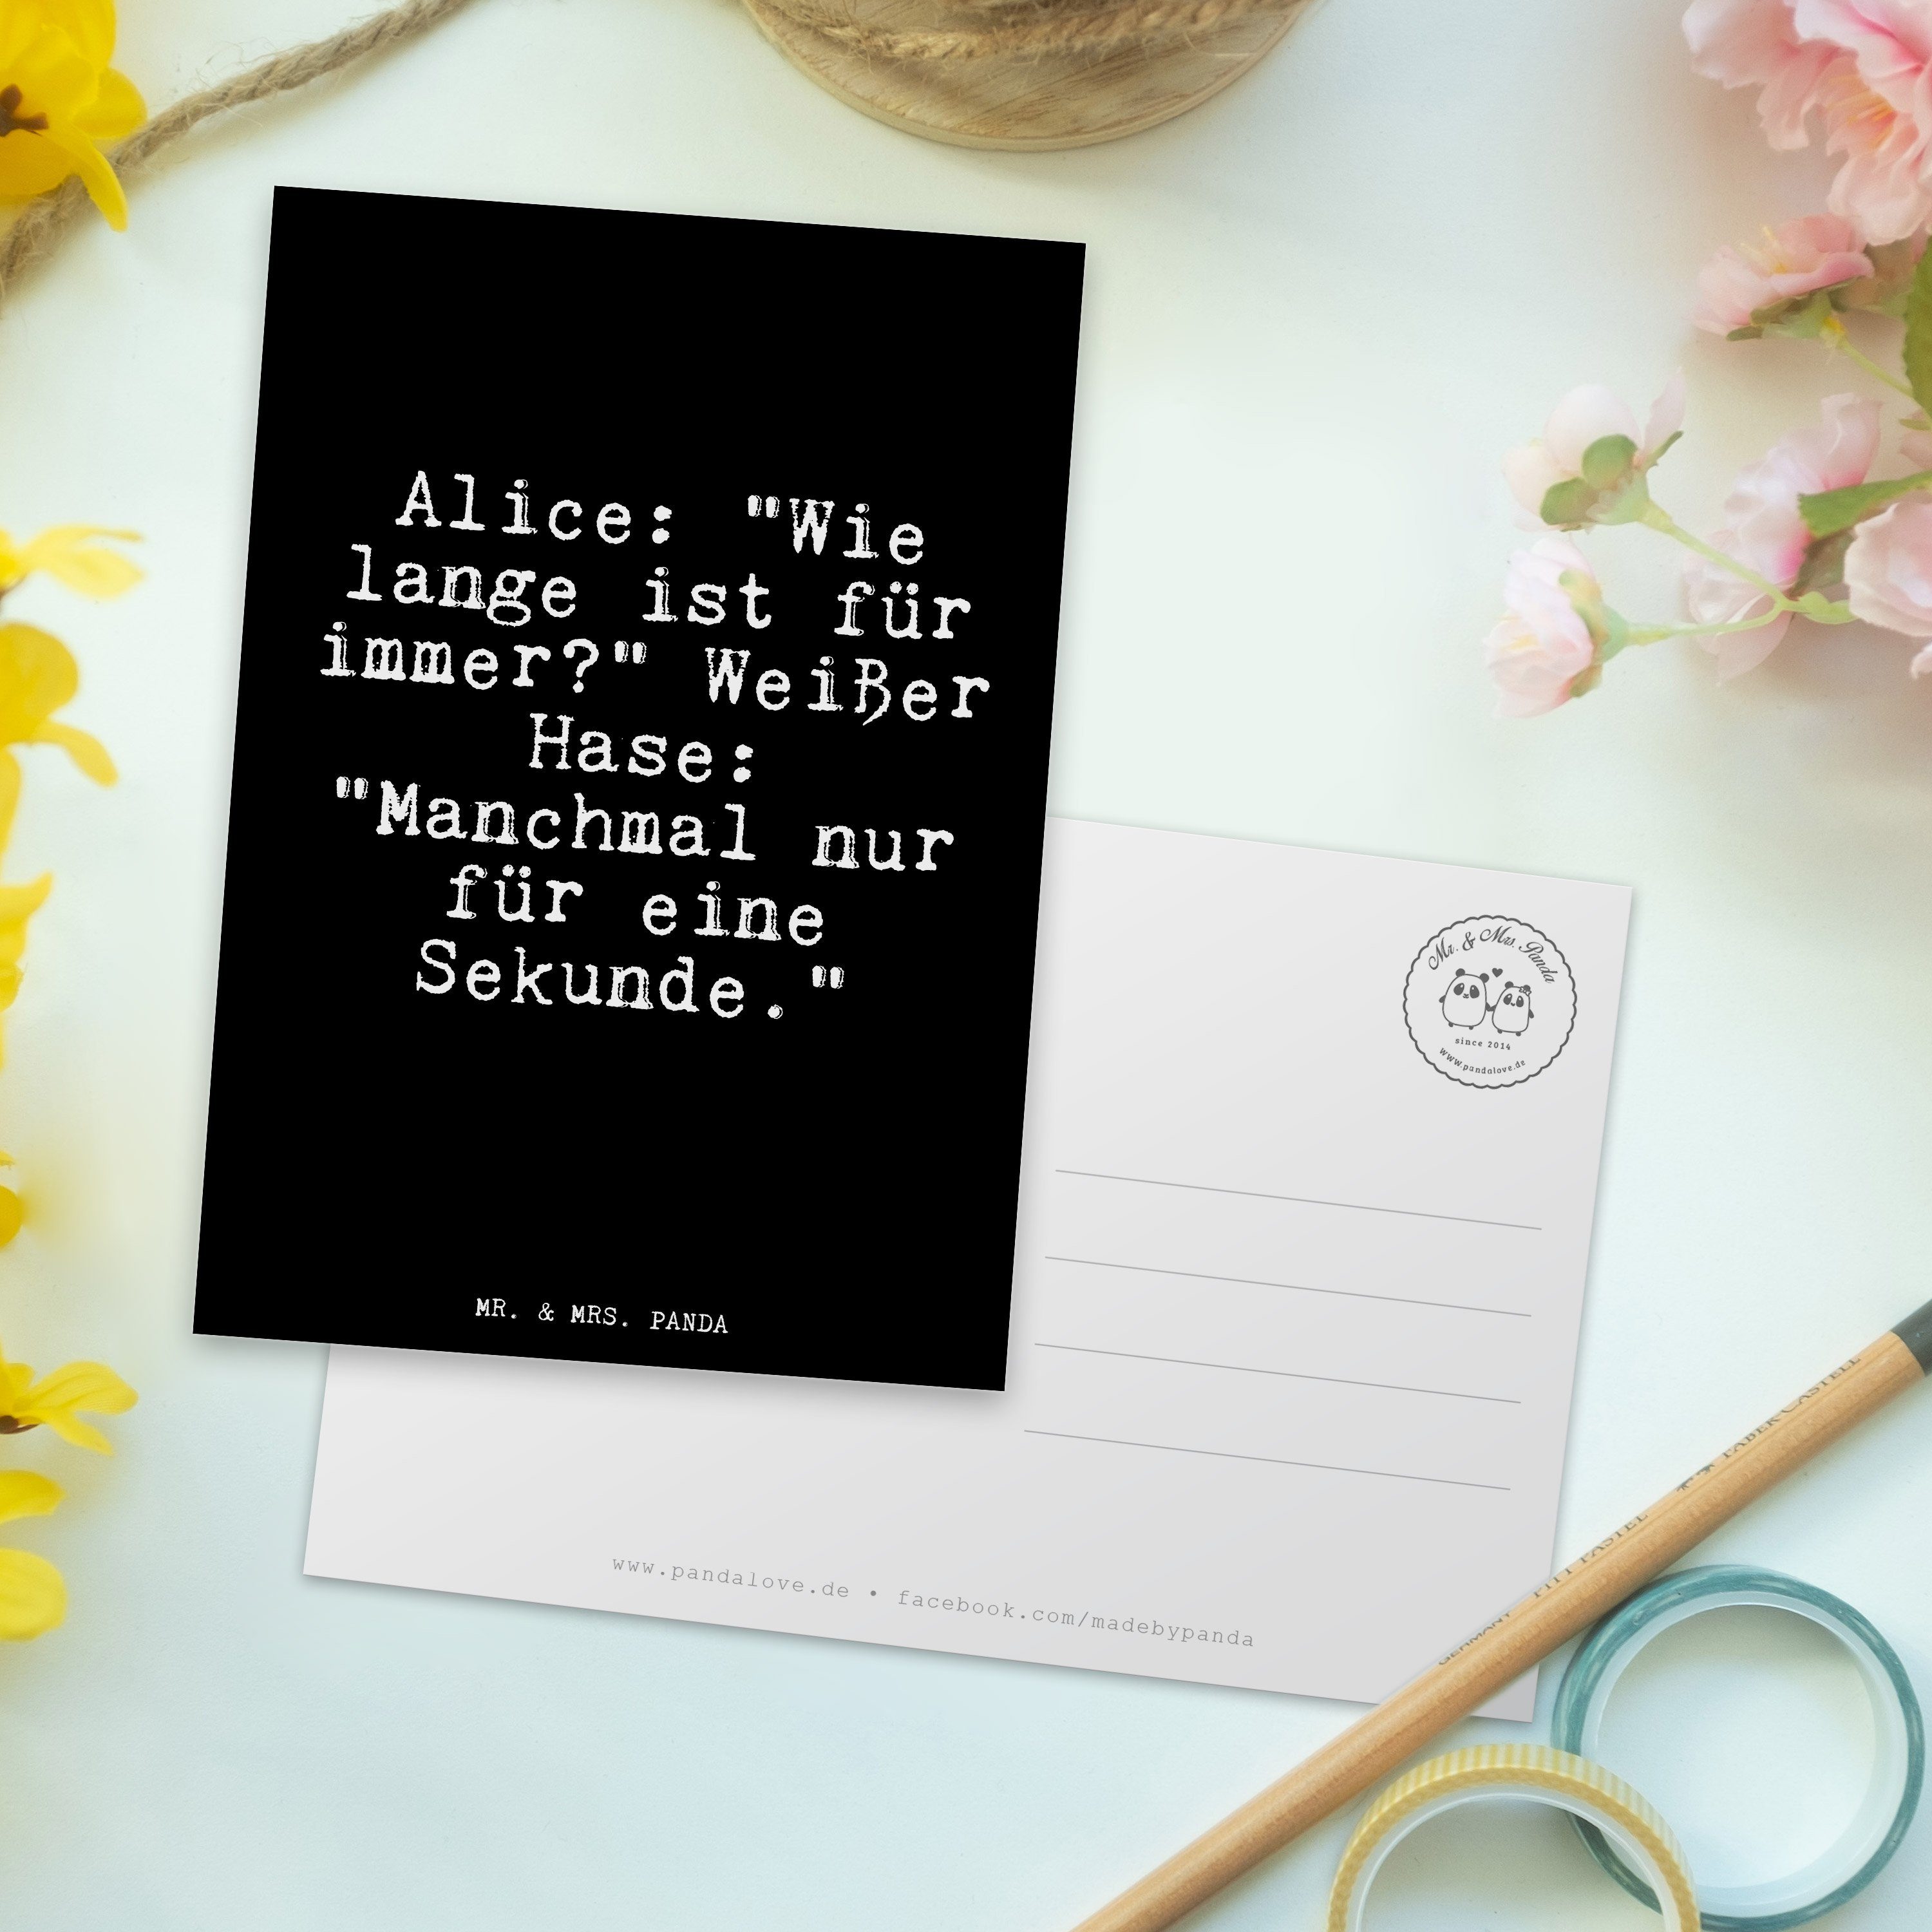 Mr. & Mrs. Panda Postkarte "Wie Geschenk, Wonderland, Alice - W Alice: Schwarz lange in - ist